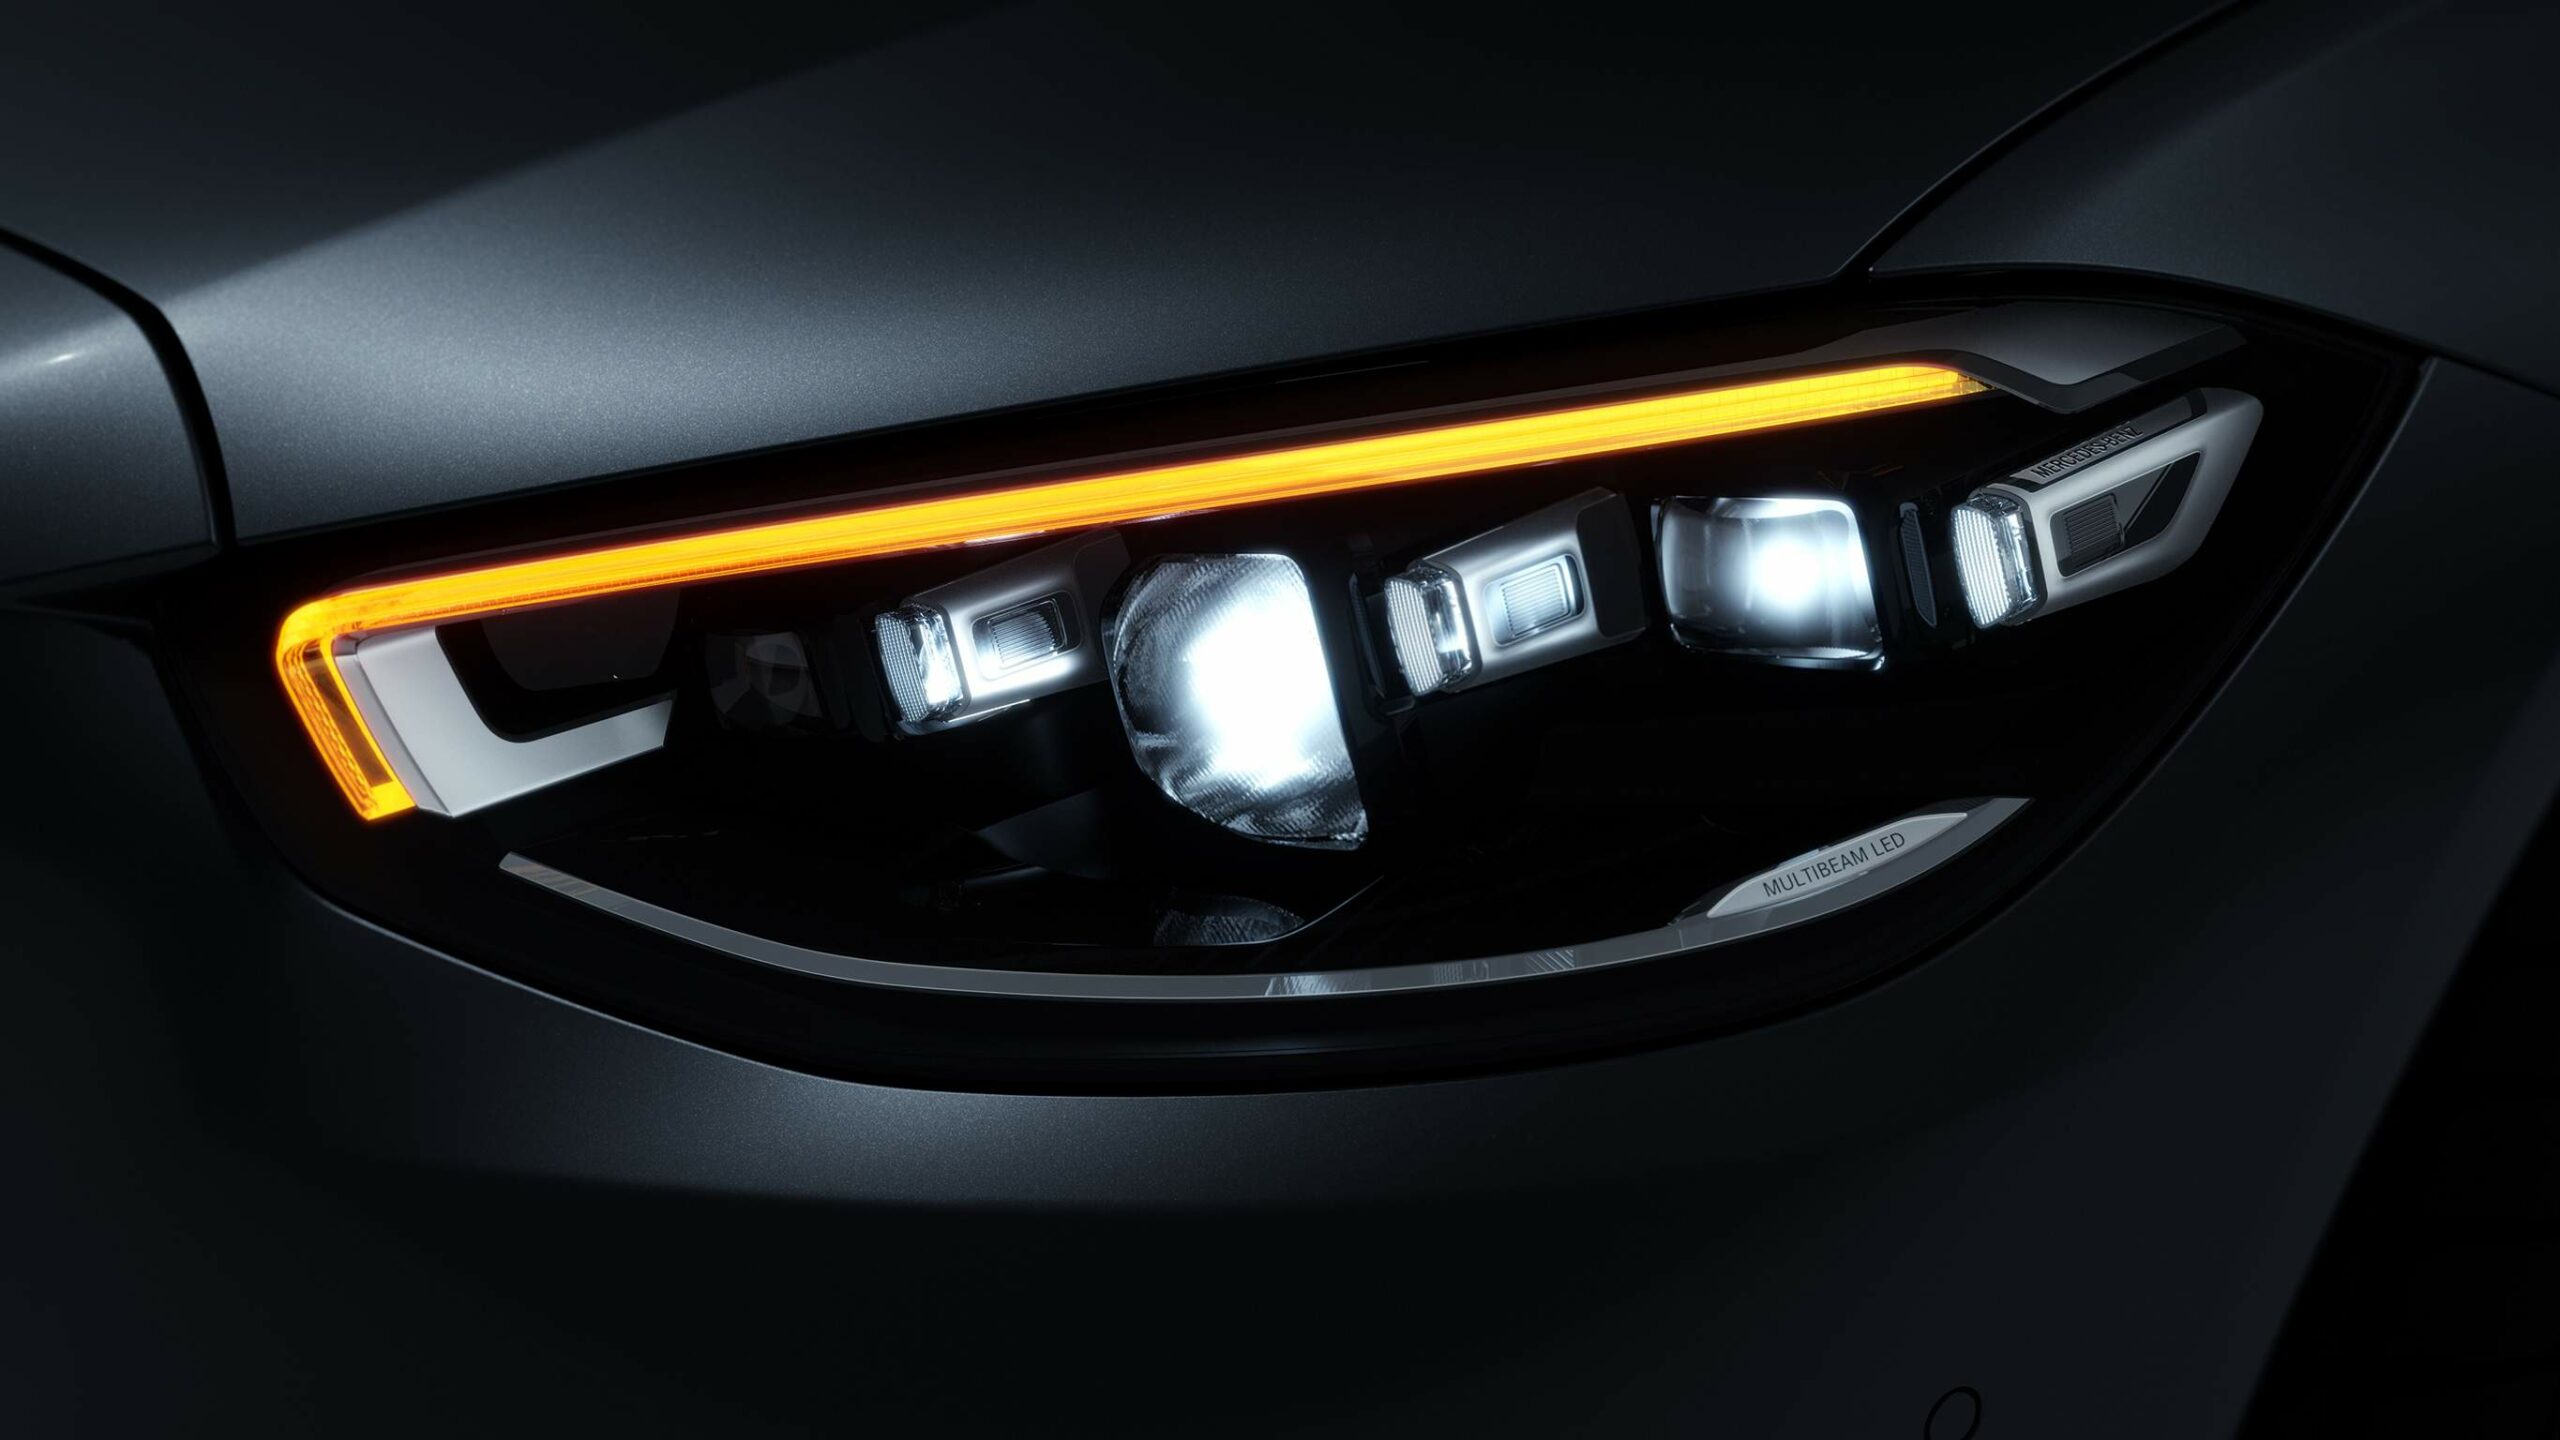 Luces frontales LED de altisima calidad y seguridad en la Clase S Sedan